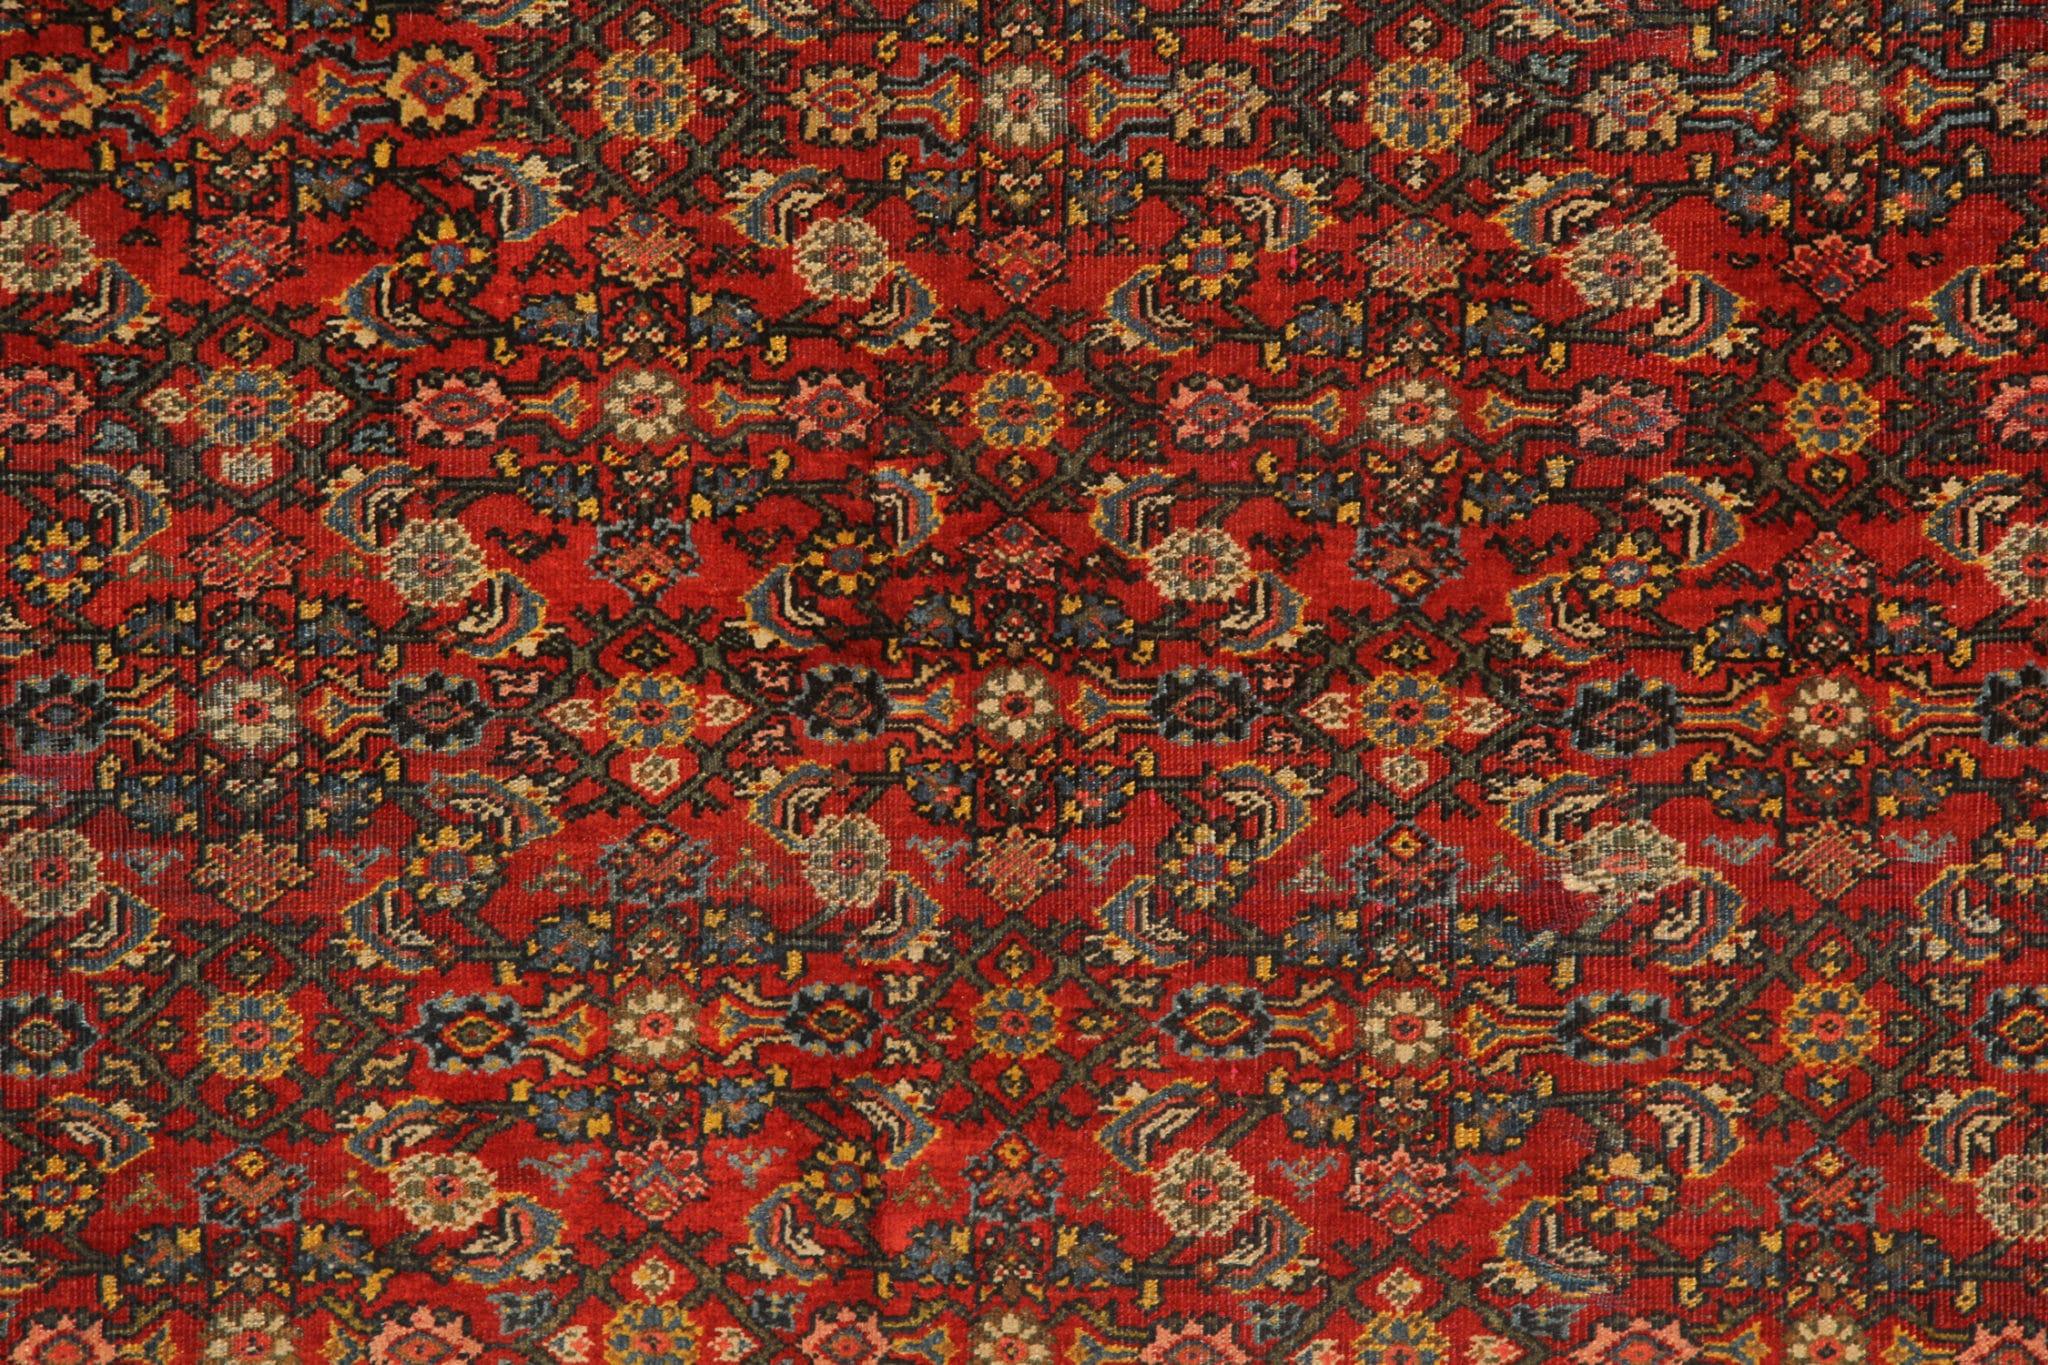 Dieser große handgefertigte quadratische Mashayekh-Teppich ist ein zeitloses Meisterwerk, das mit äußerster Präzision und Sorgfalt hergestellt wurde. Dieser Teppich stammt aus den 1880er Jahren und hat eine reiche Geschichte und eine